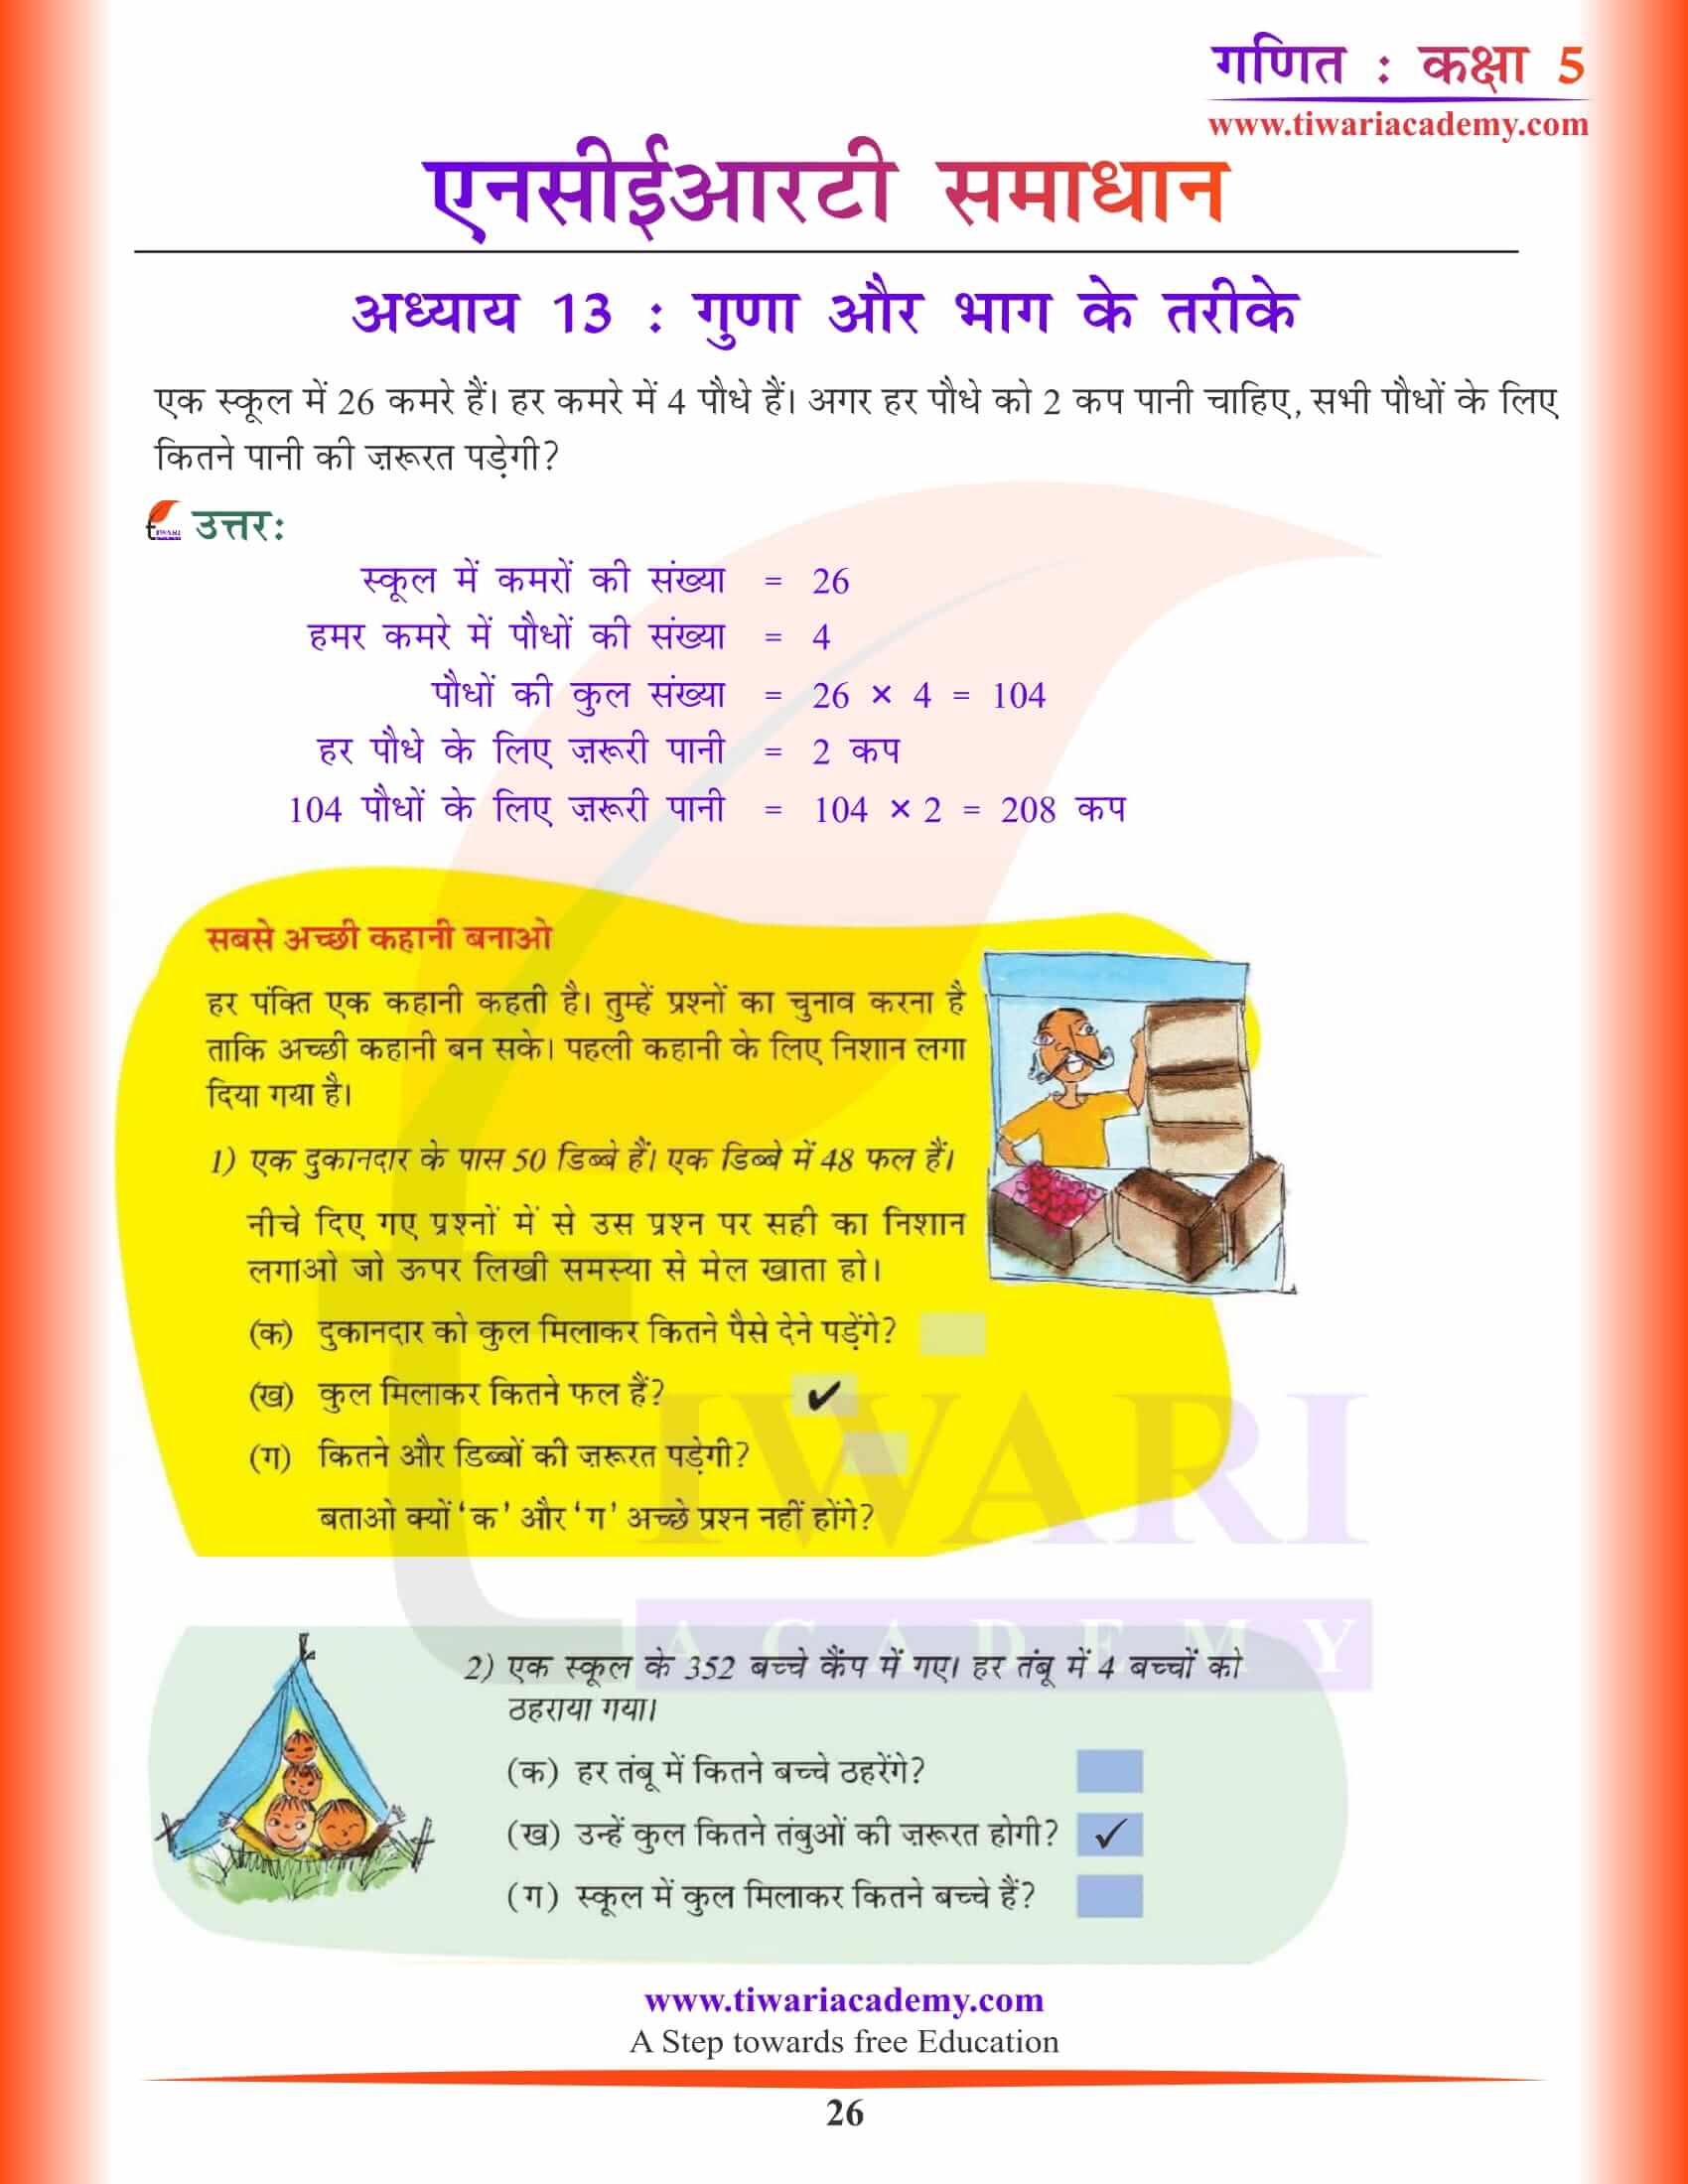 कक्षा 5 गणित अध्याय 13 हिंदी में उत्तर